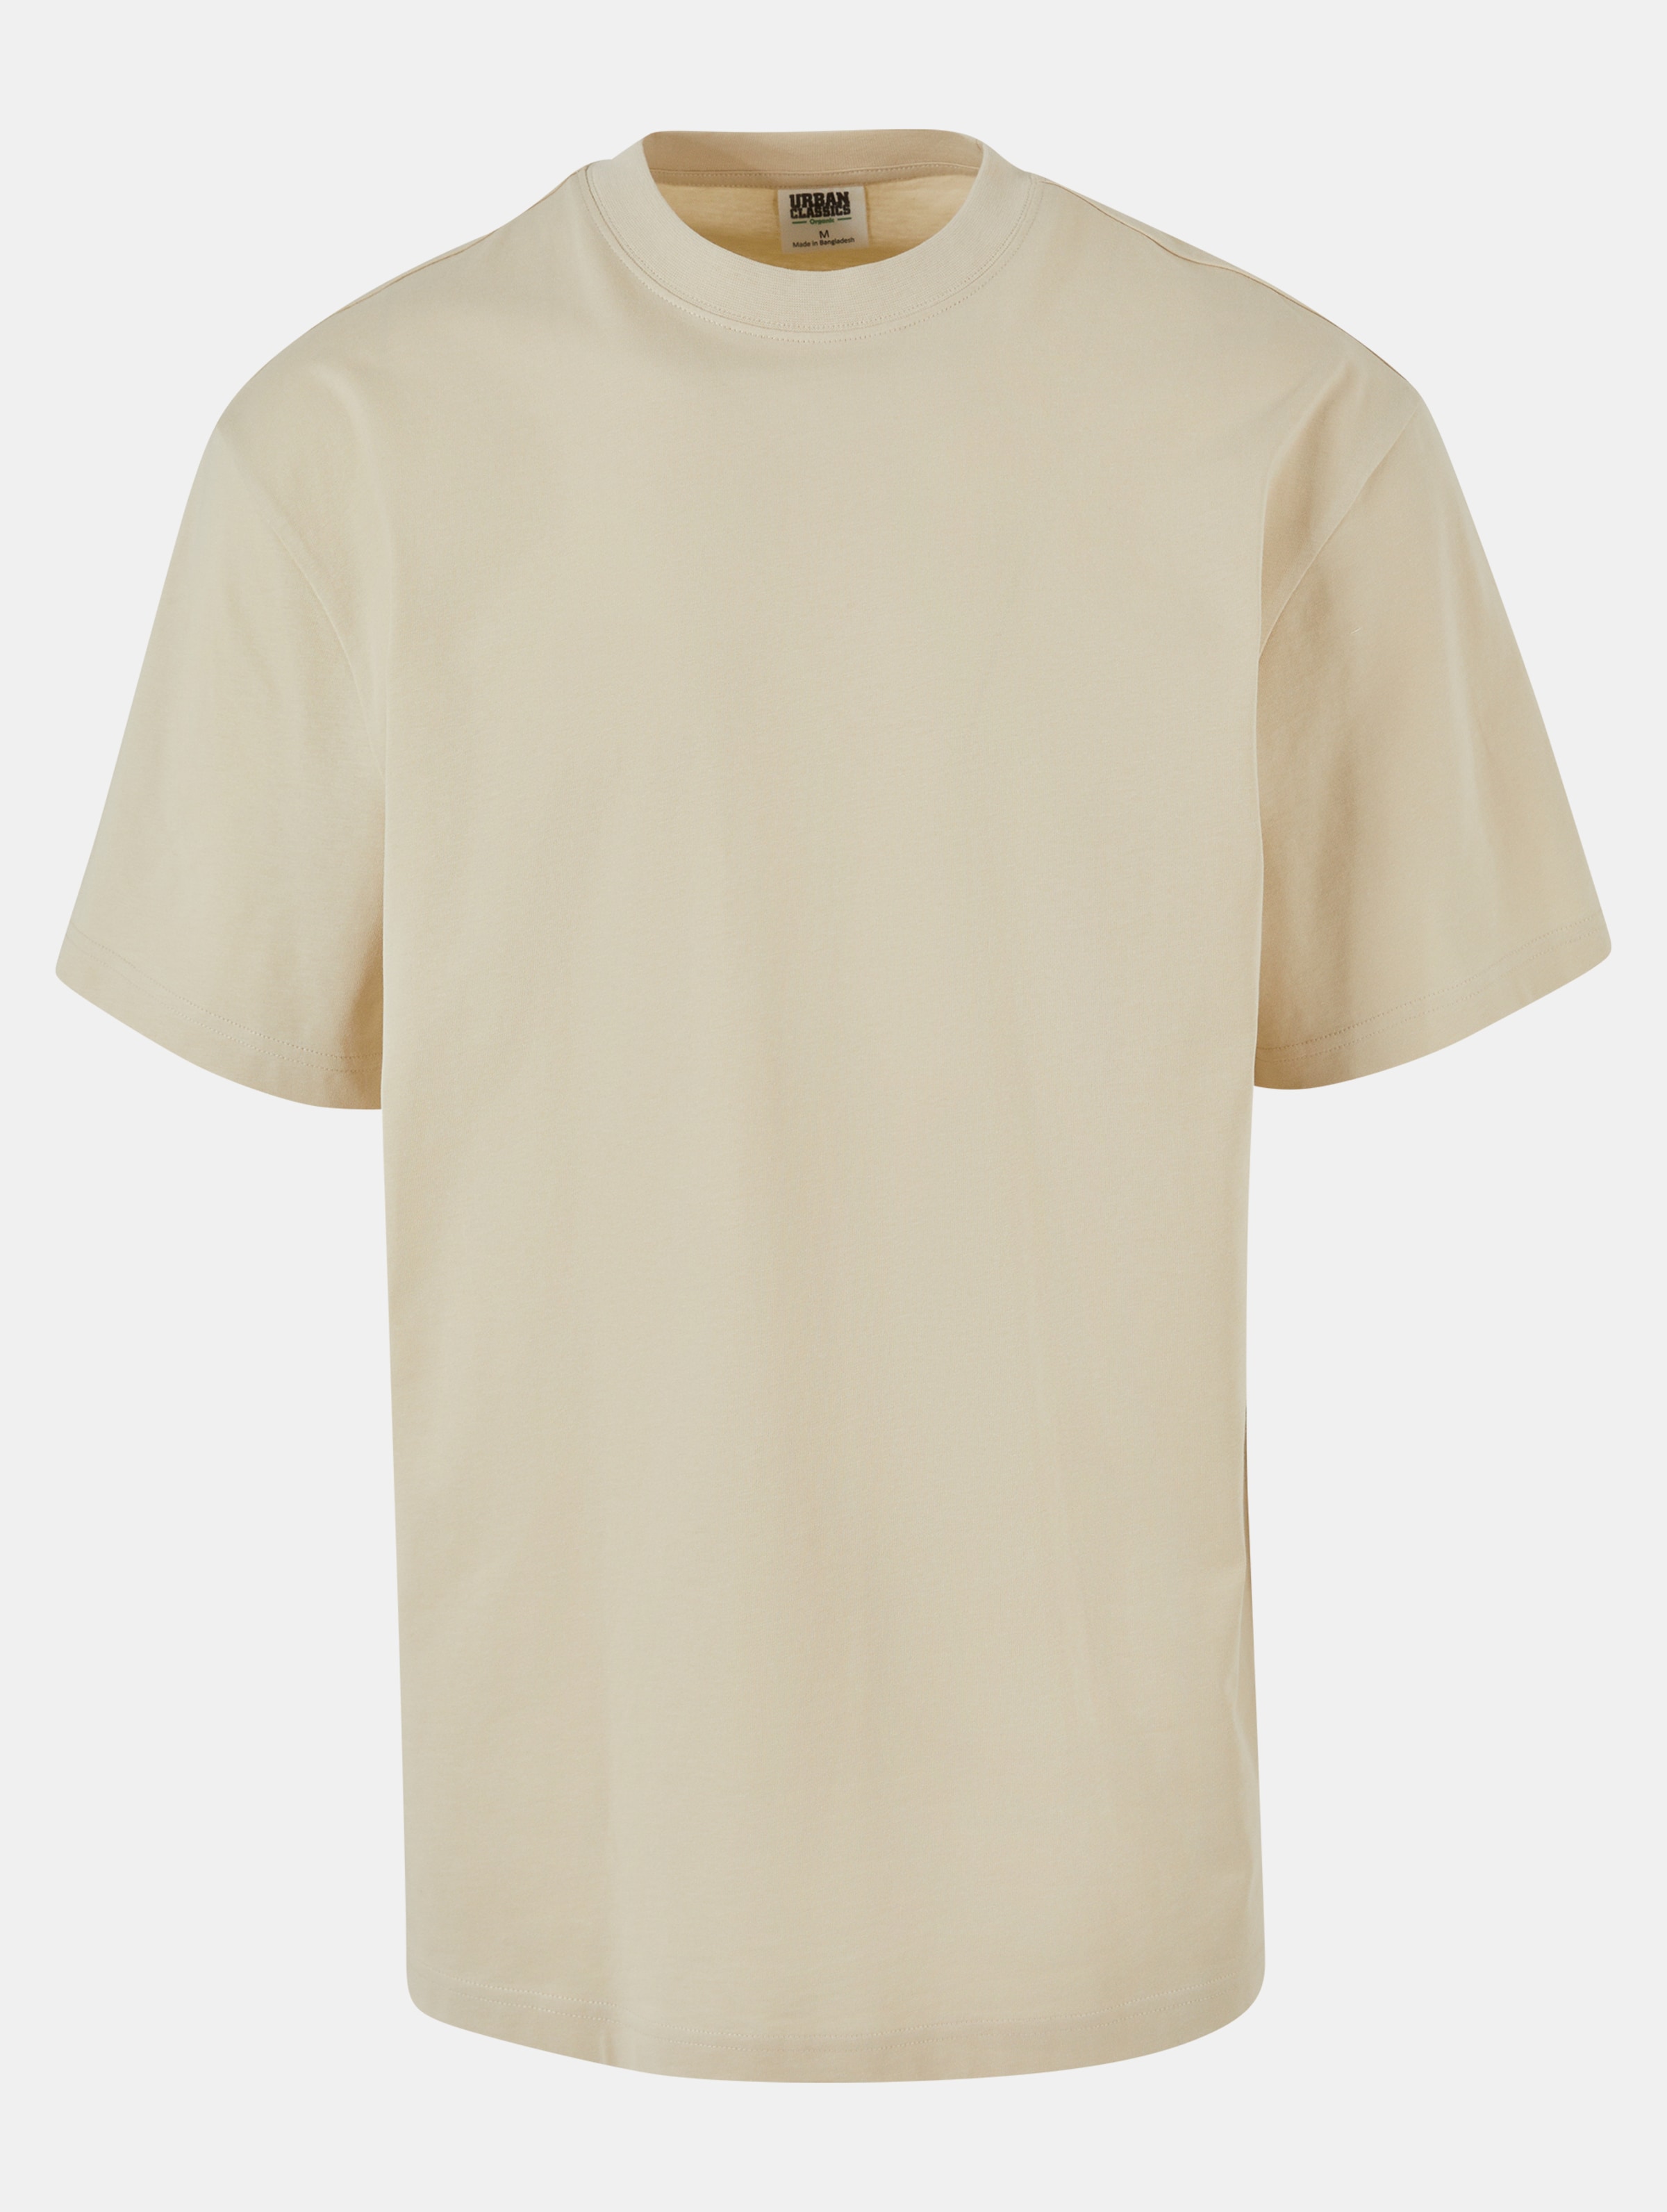 Urban Classics - Organic Tall Mens Tshirt - XL - Beige